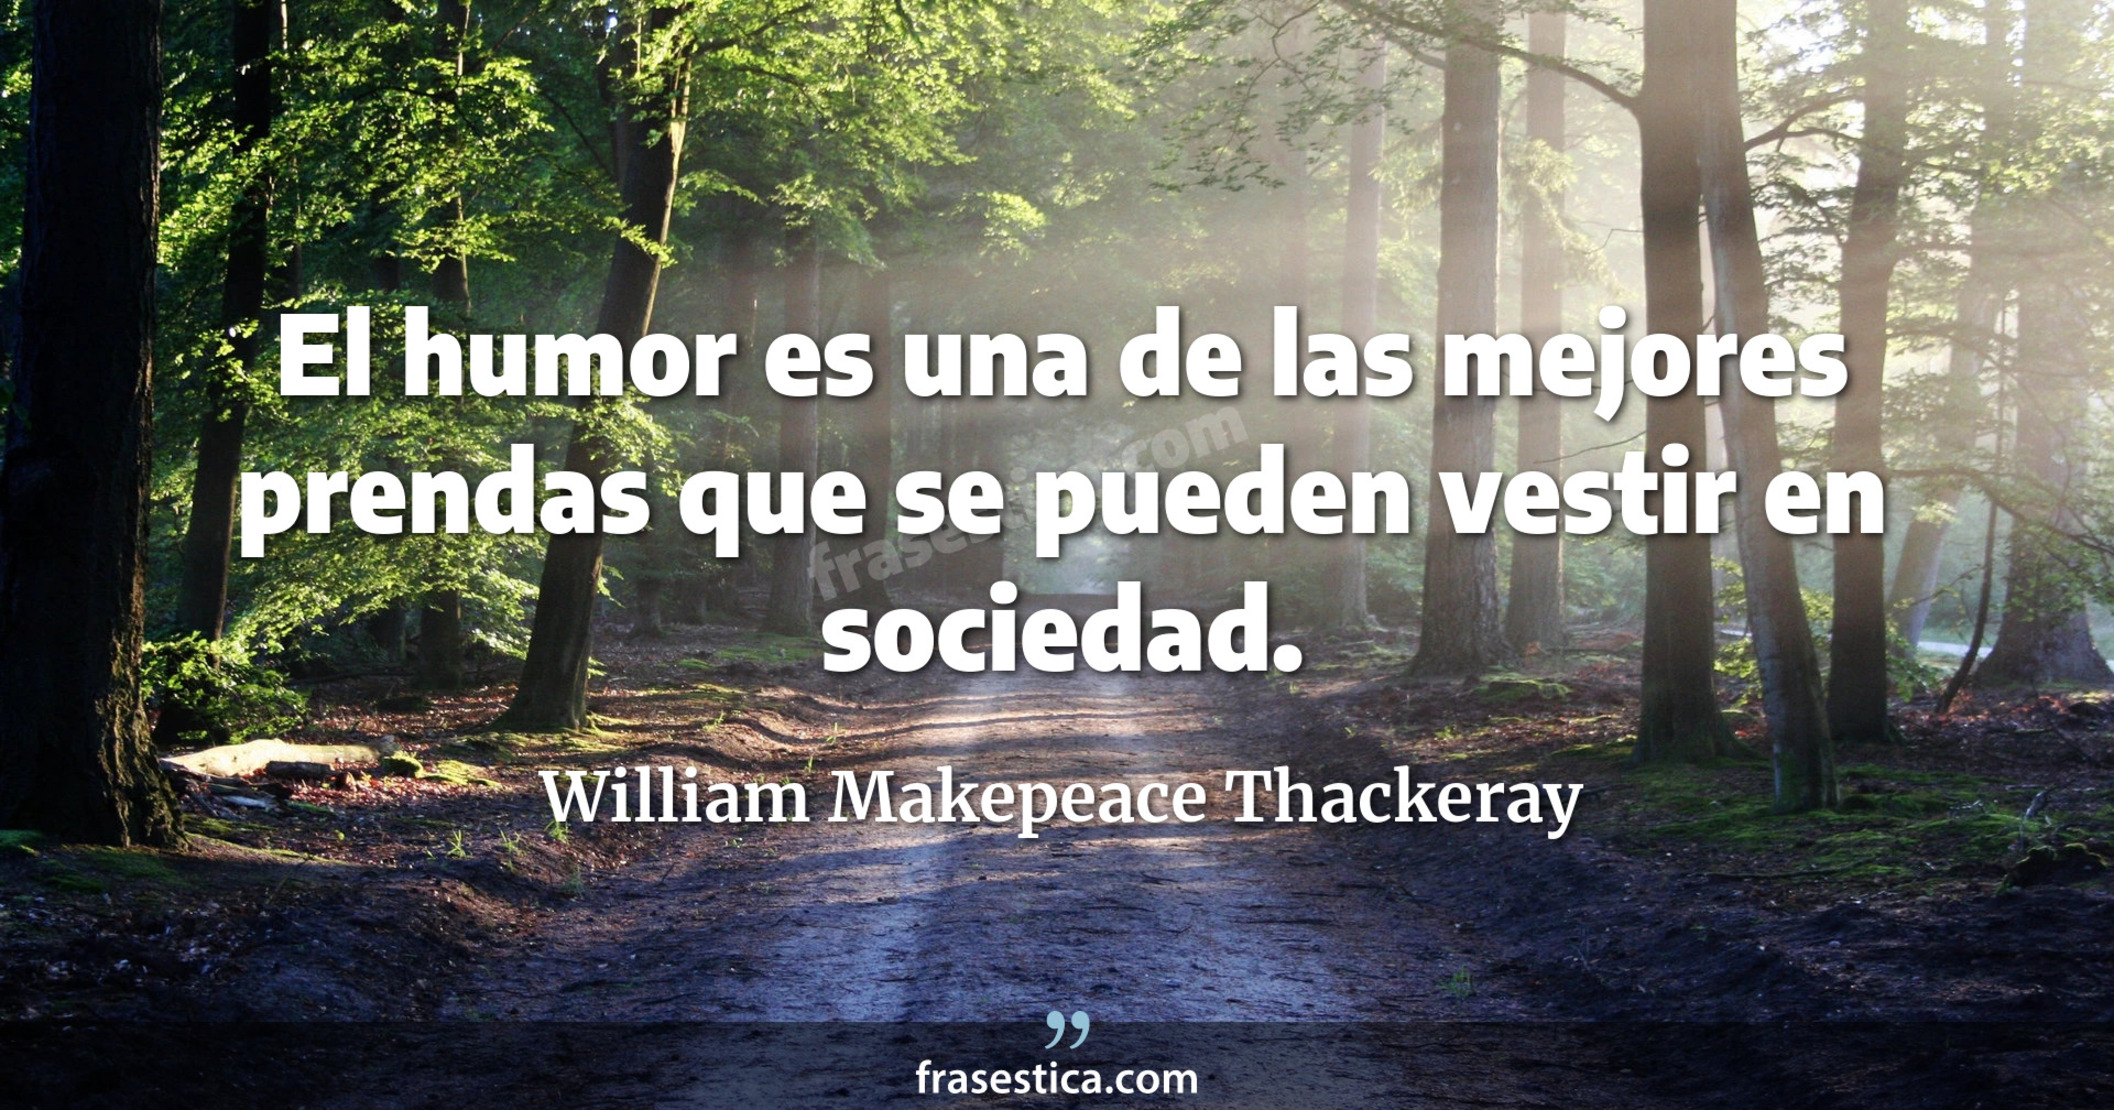 El humor es una de las mejores prendas que se pueden vestir en sociedad. - William Makepeace Thackeray